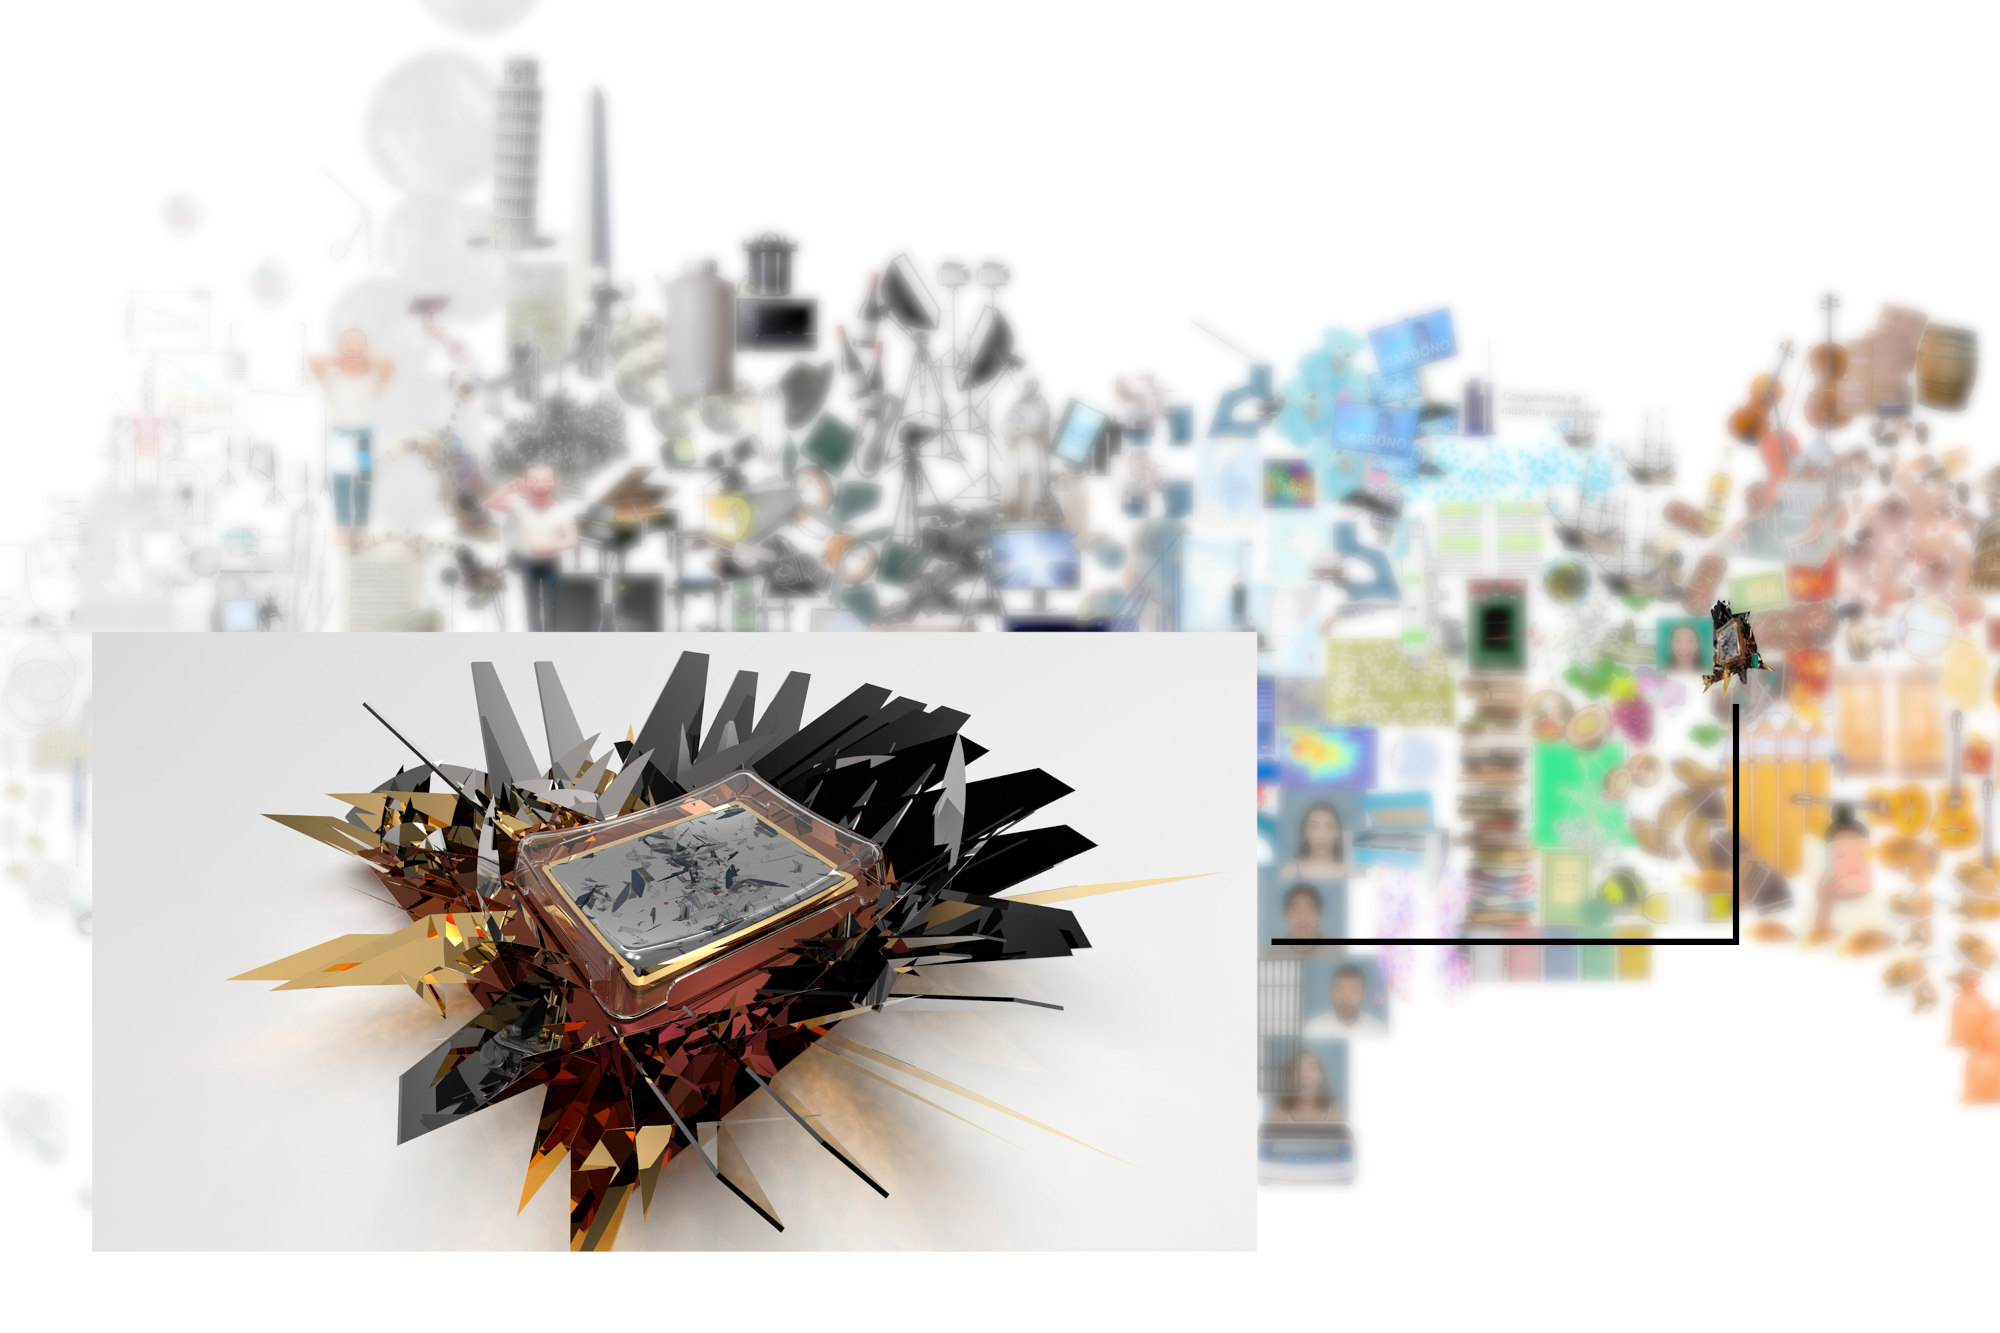 Participación en “Ars Electronica Festival”. Realización de obra conjunta con investigadores de Muntref Centro de Arte y Ciencia “The Garden of Curiosity”. (Septiembre 2020)